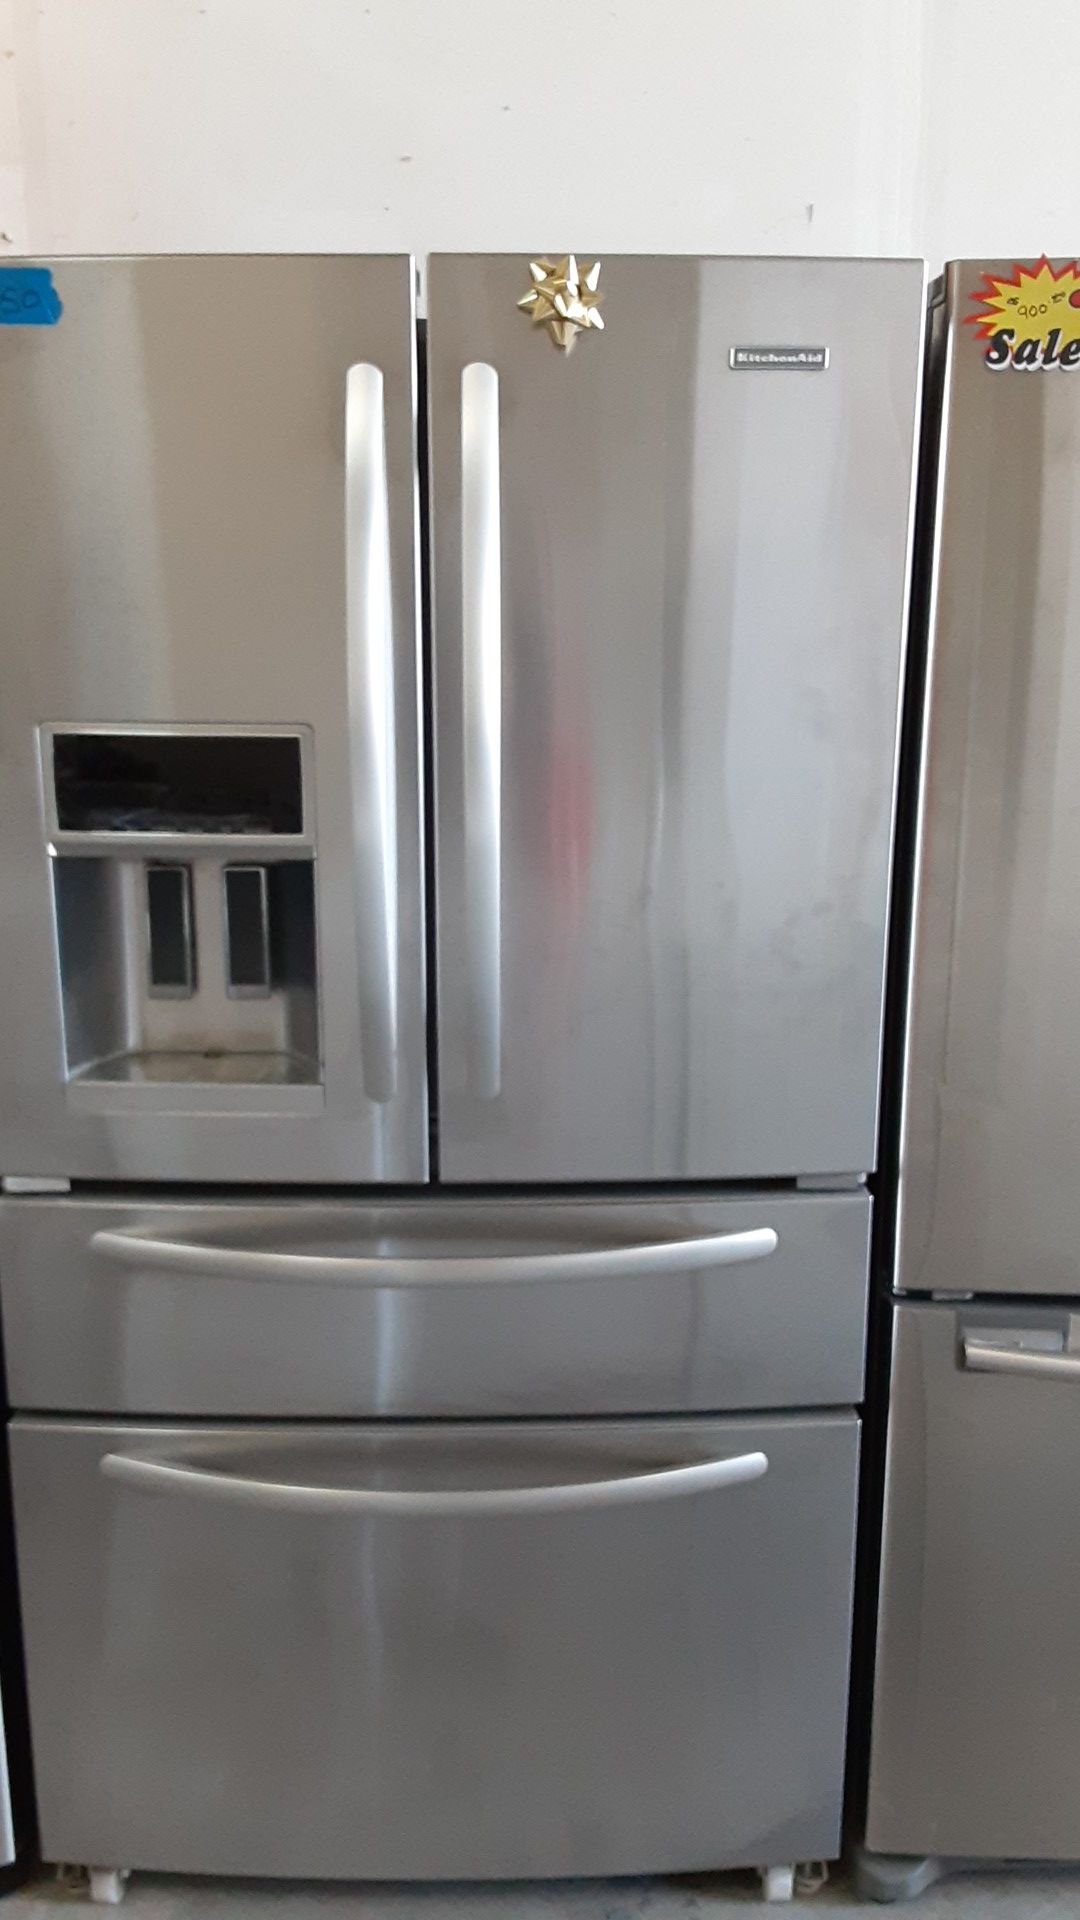 Kitchen aid refrigerator stainless steel